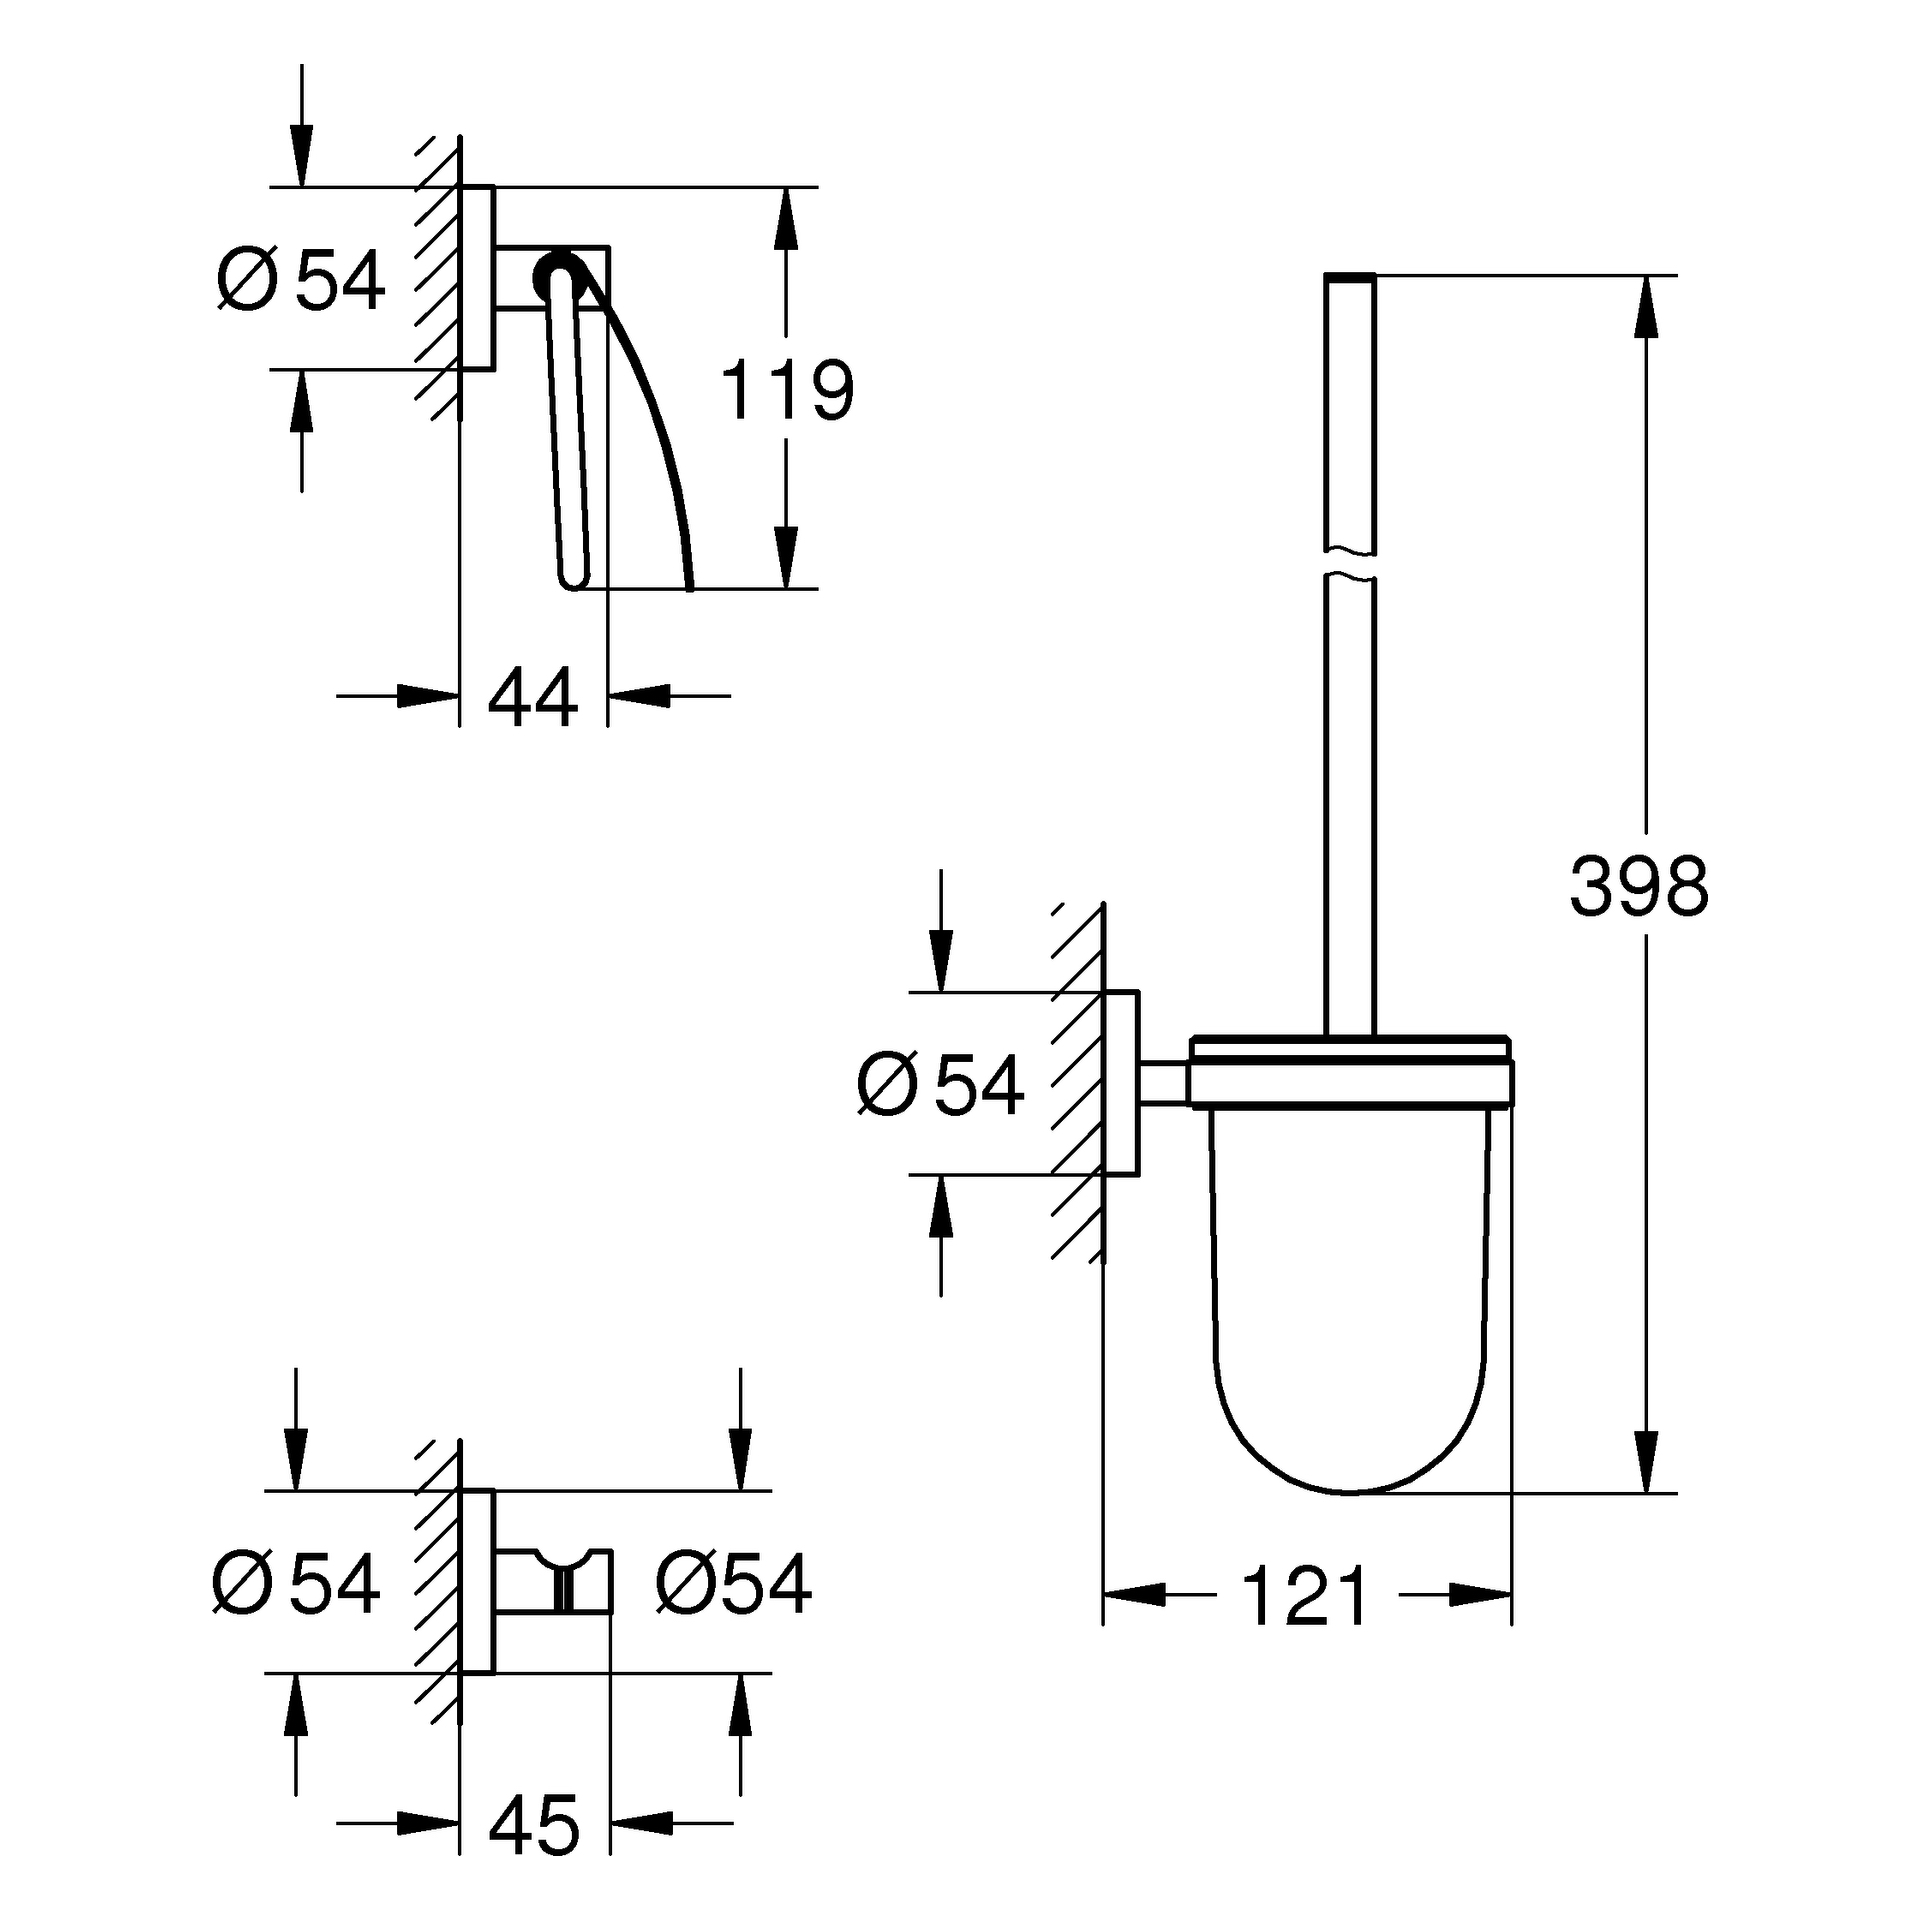 WC-Set 3-in-1 Essentials 40407_1, mit Toilettenbürstengarnitur, Bademantelhaken, WC-Papierhalter mit Deckel, chrom